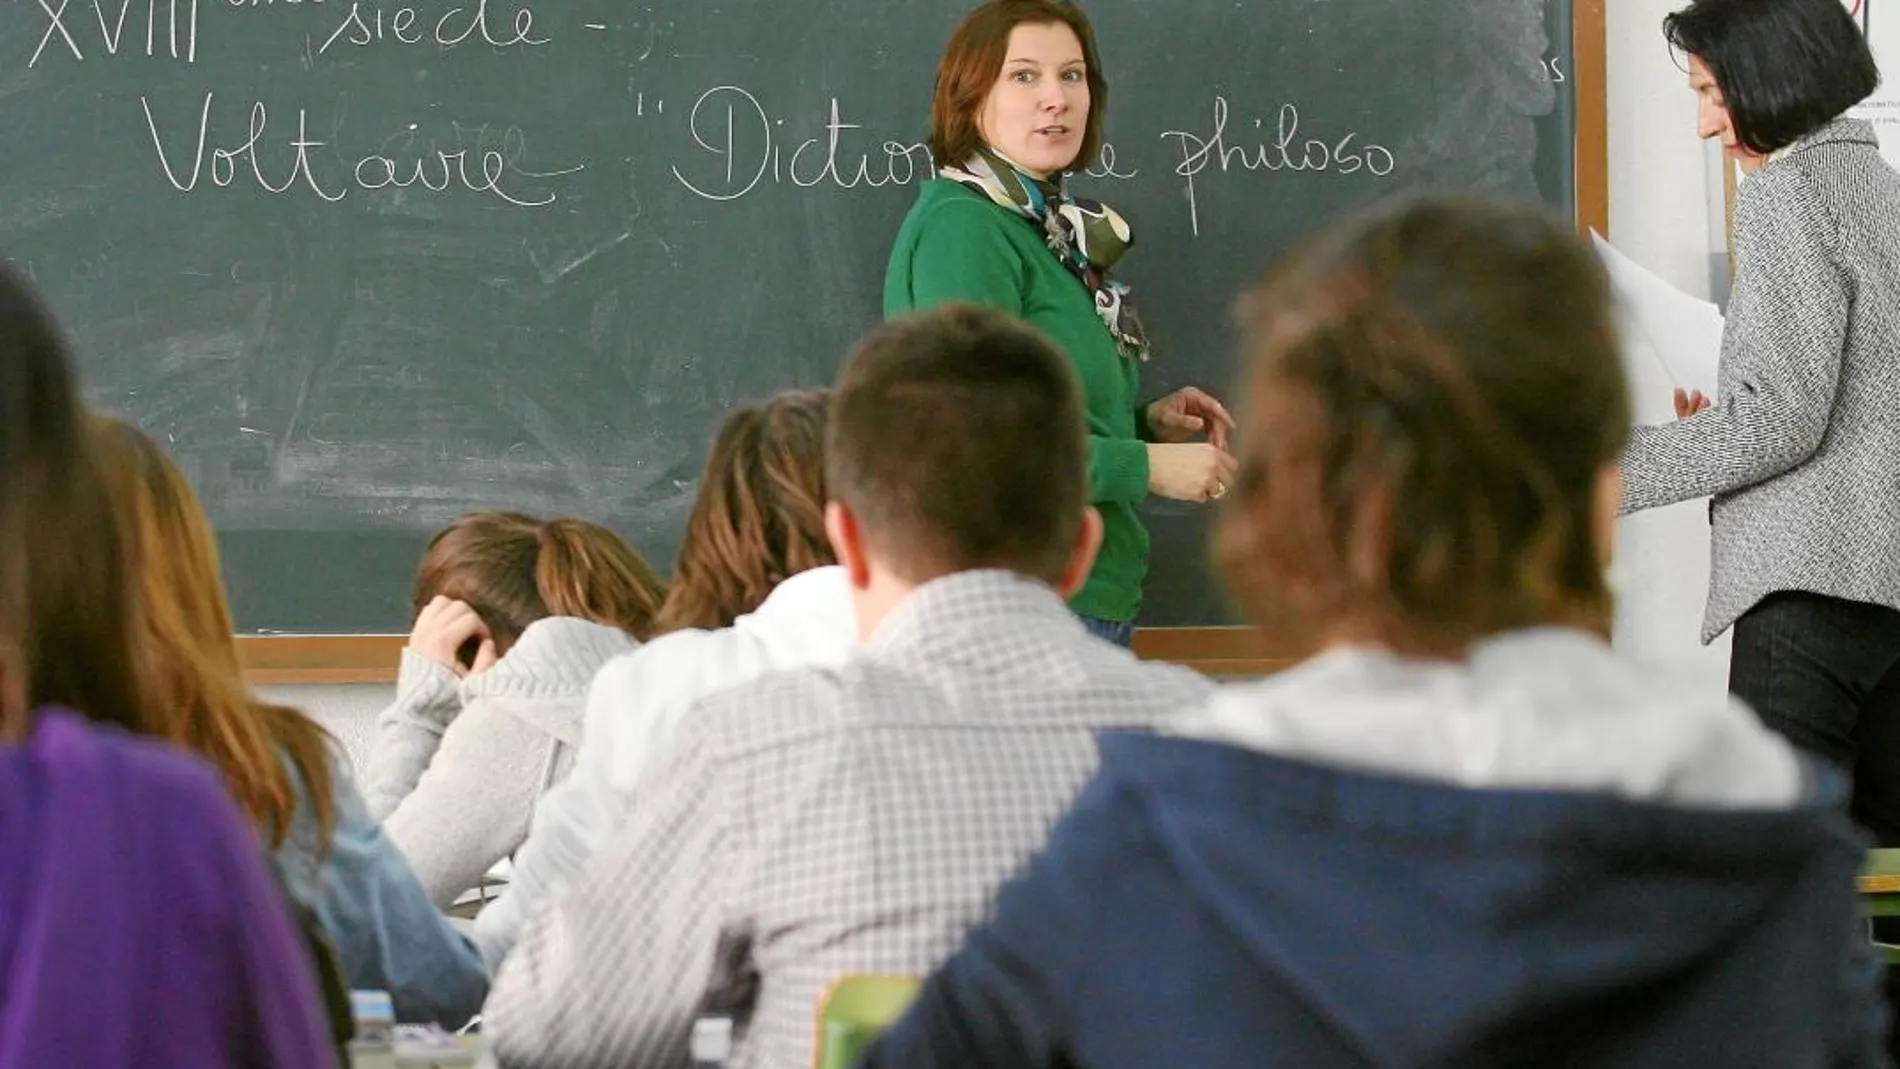 El MIR para profesores que se quiere implantar en España es similar al modelo finlandés